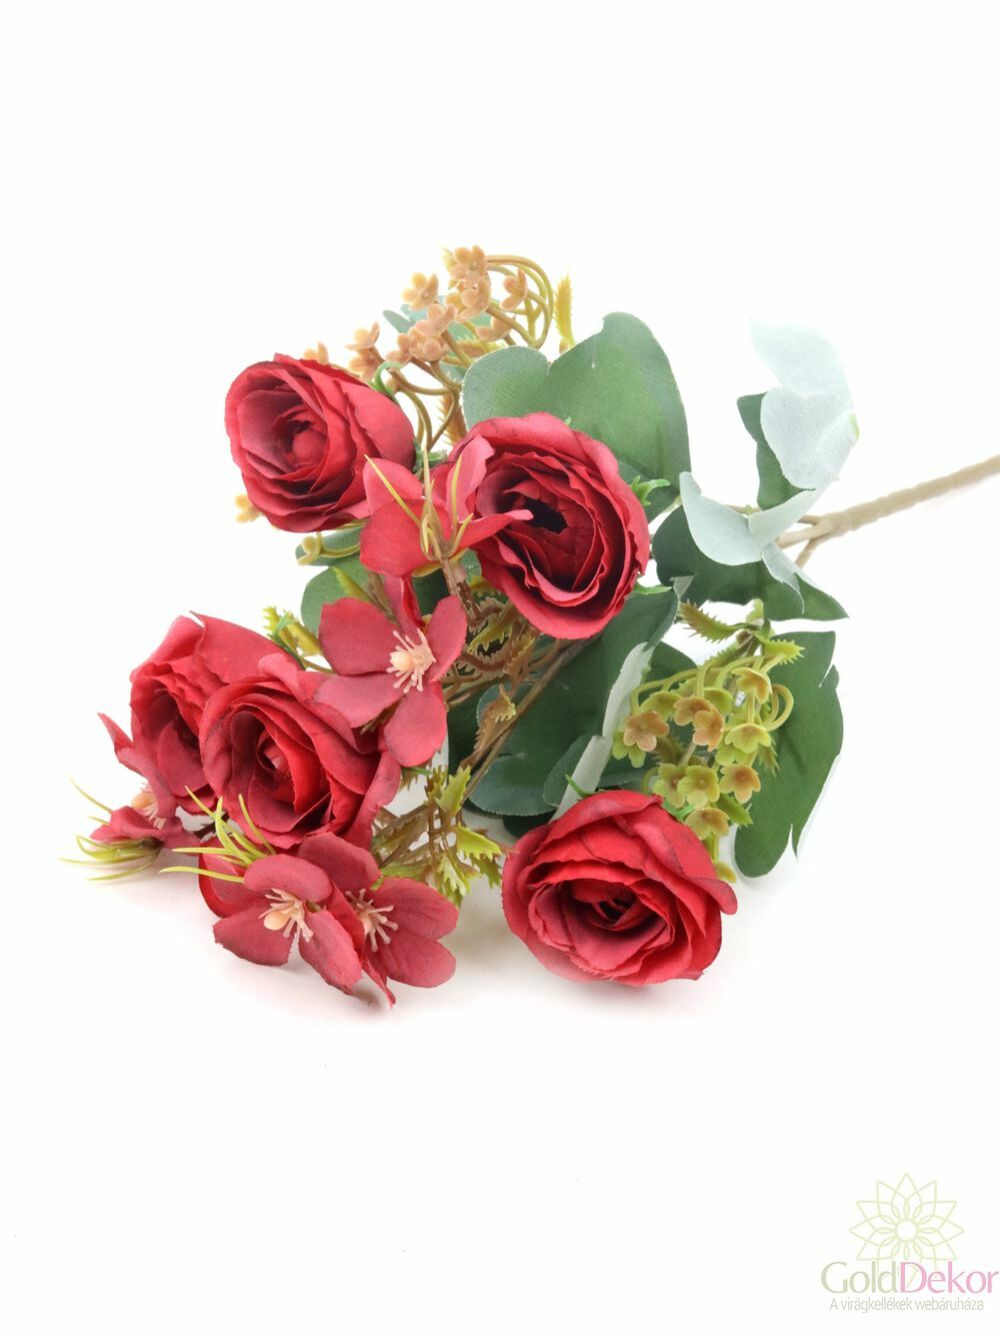 Vegyes színű rózsa csokor - Piros